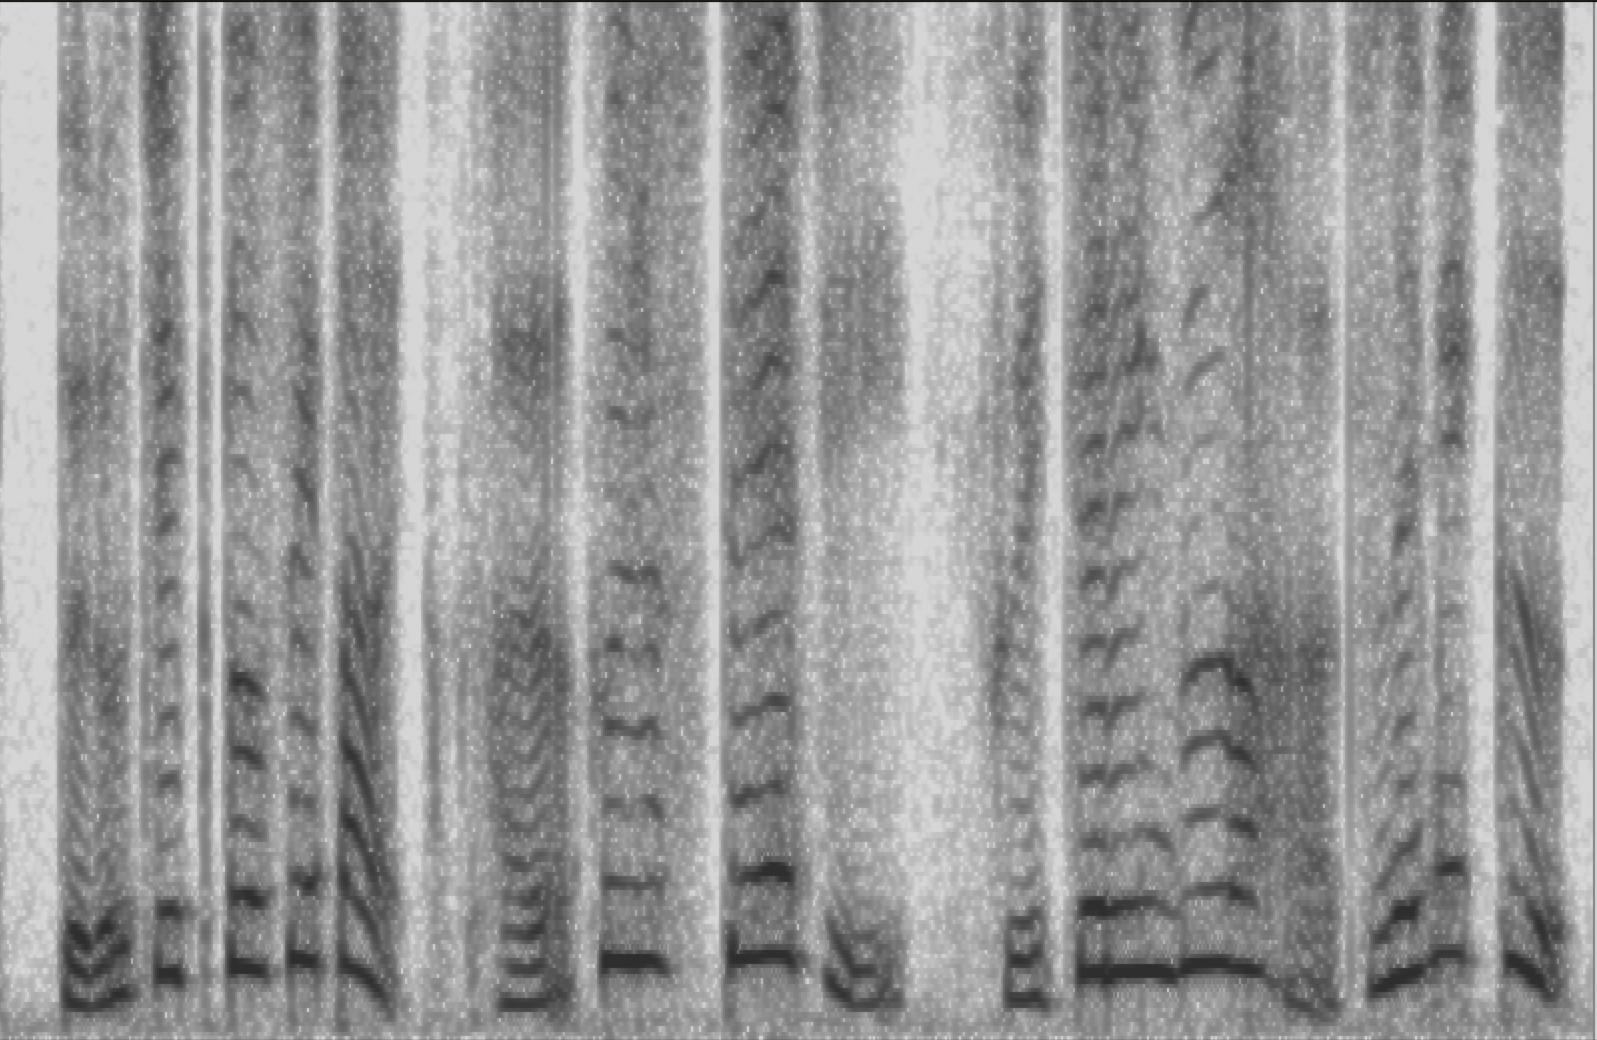 A spectrogram of human speech